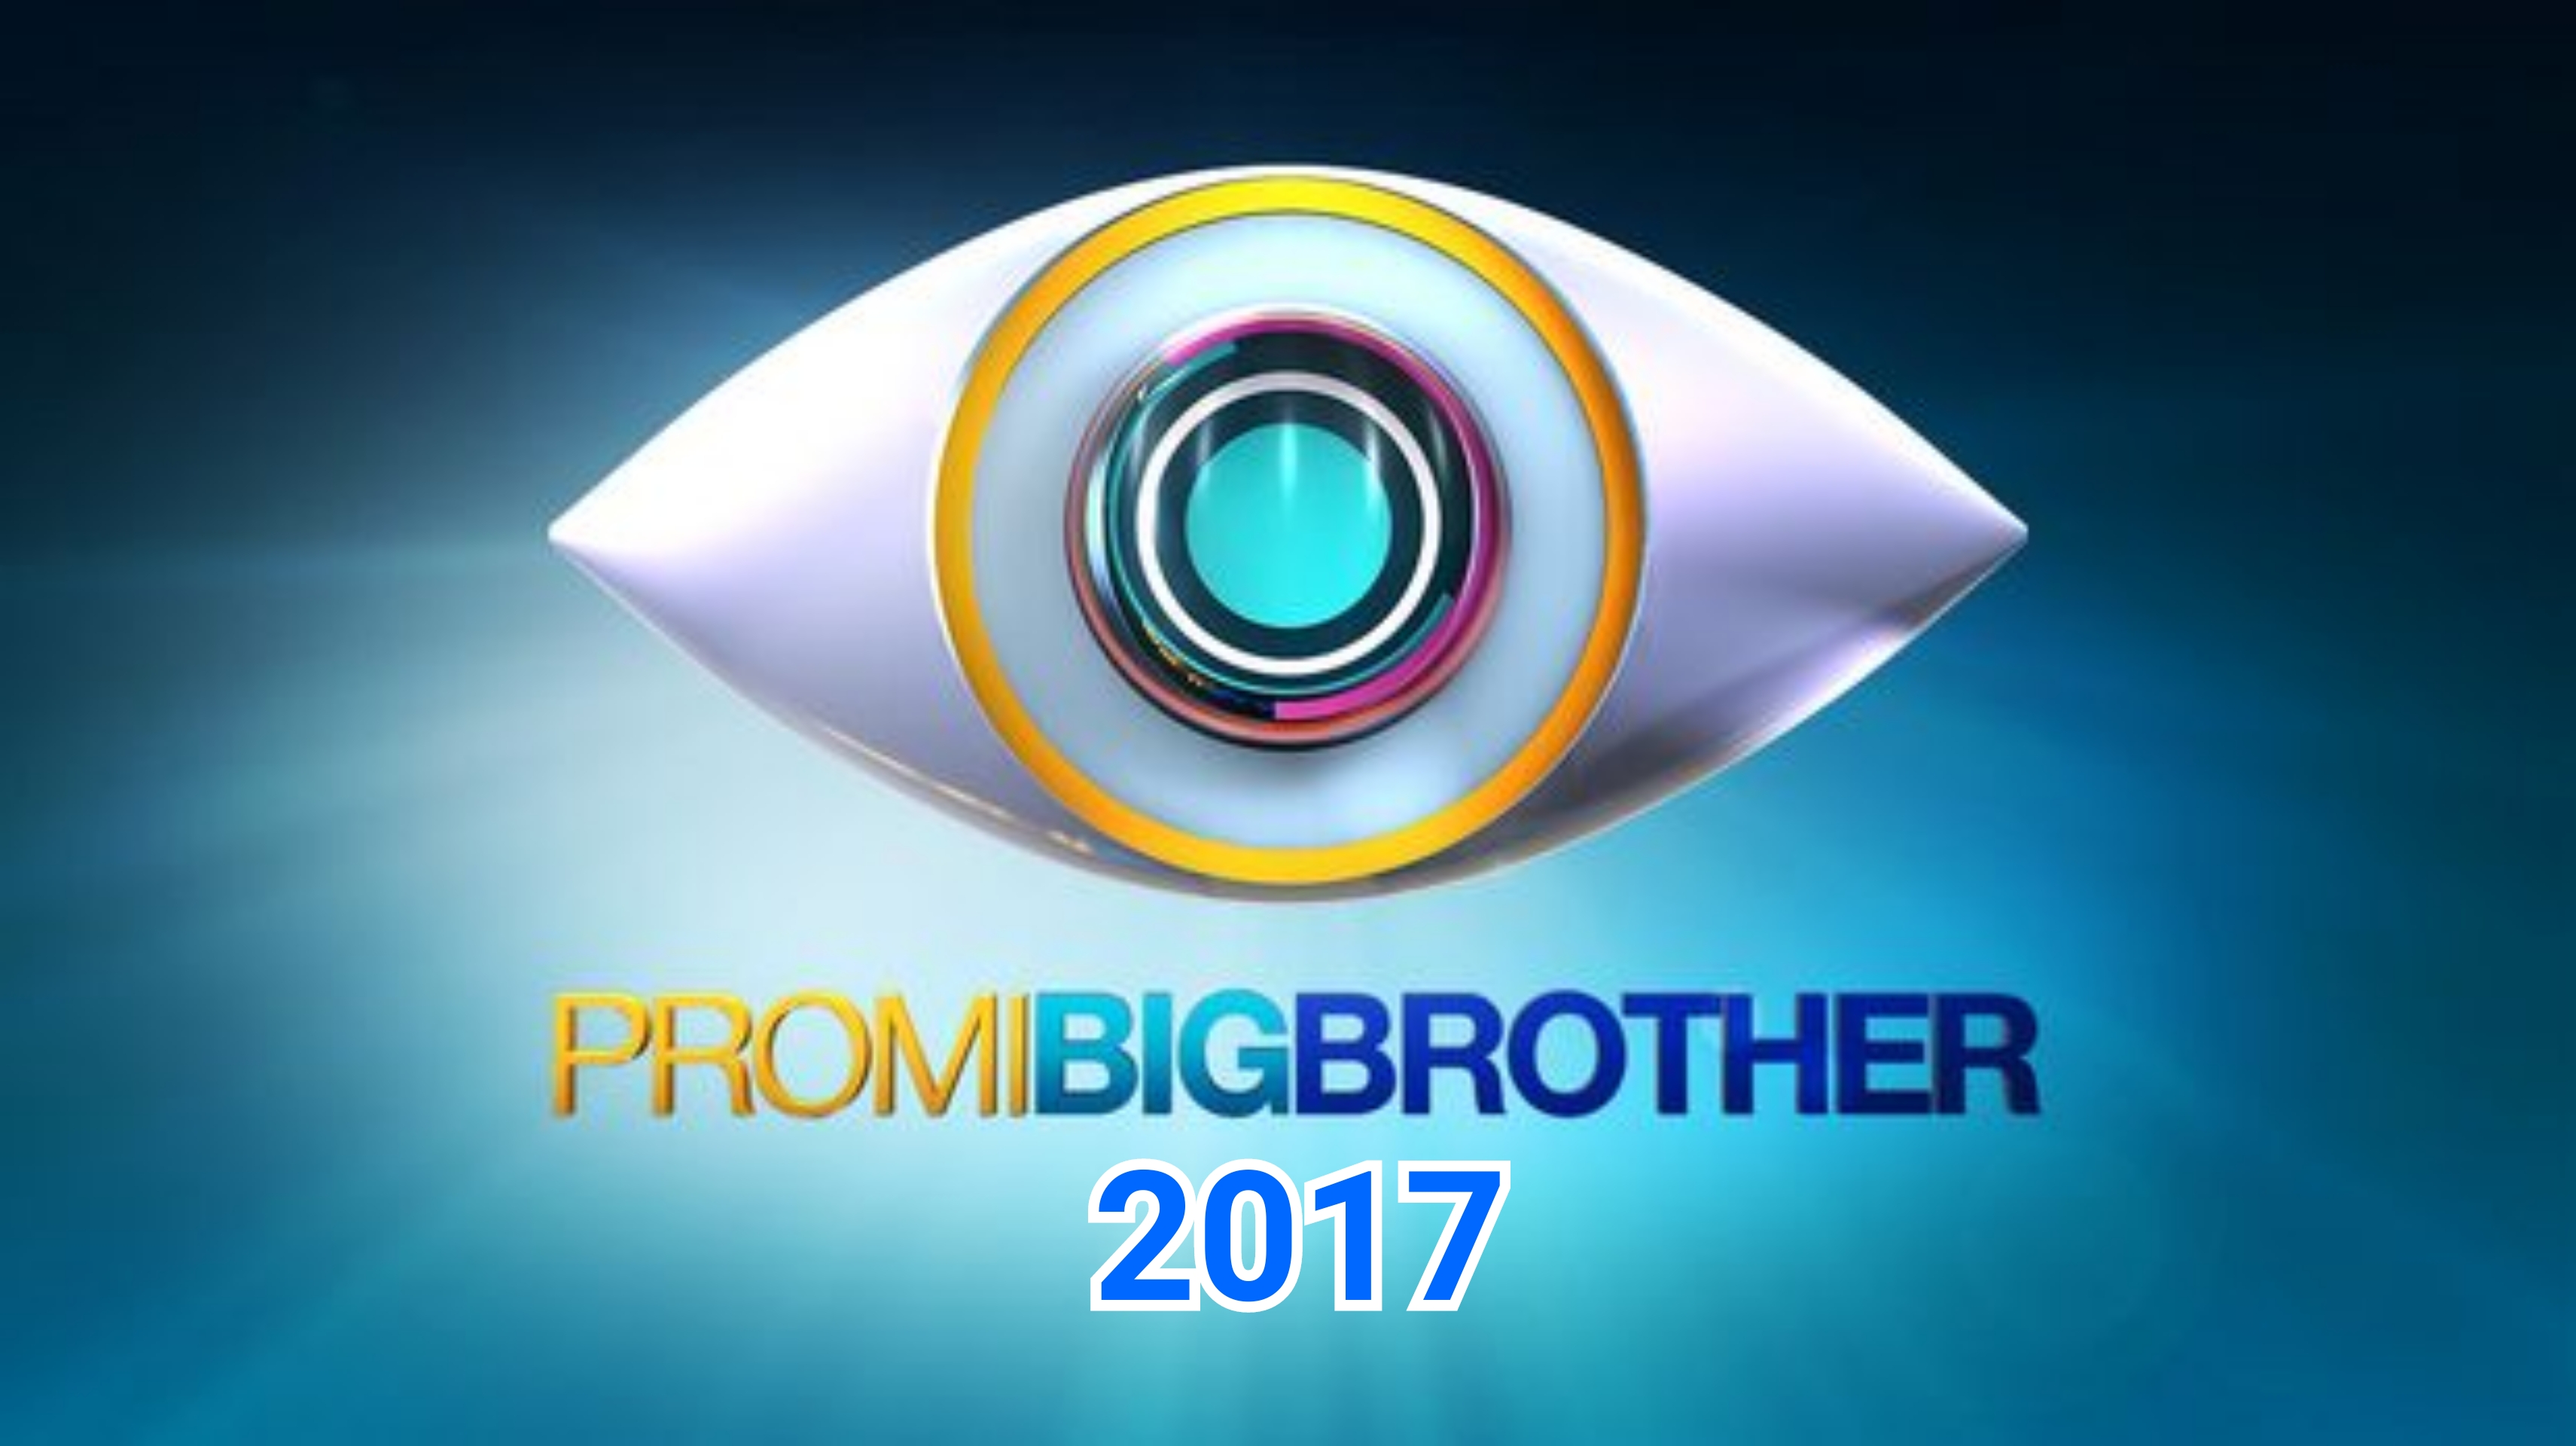 --Dein Favorit bei Promi Big Brother 2017--